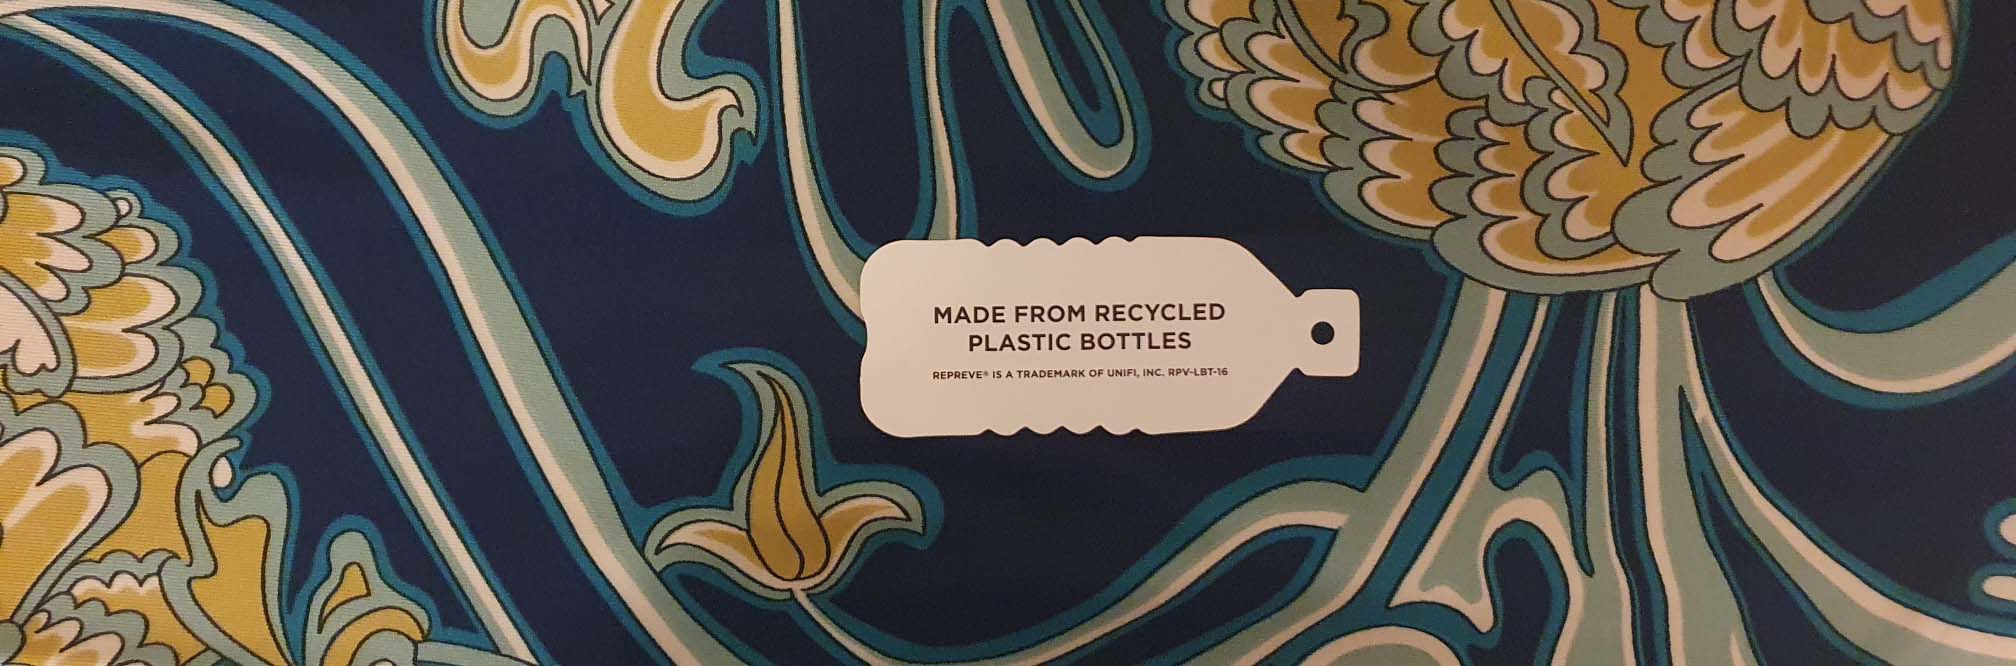 Duurzame kleding van plastic flessen, kan dat?